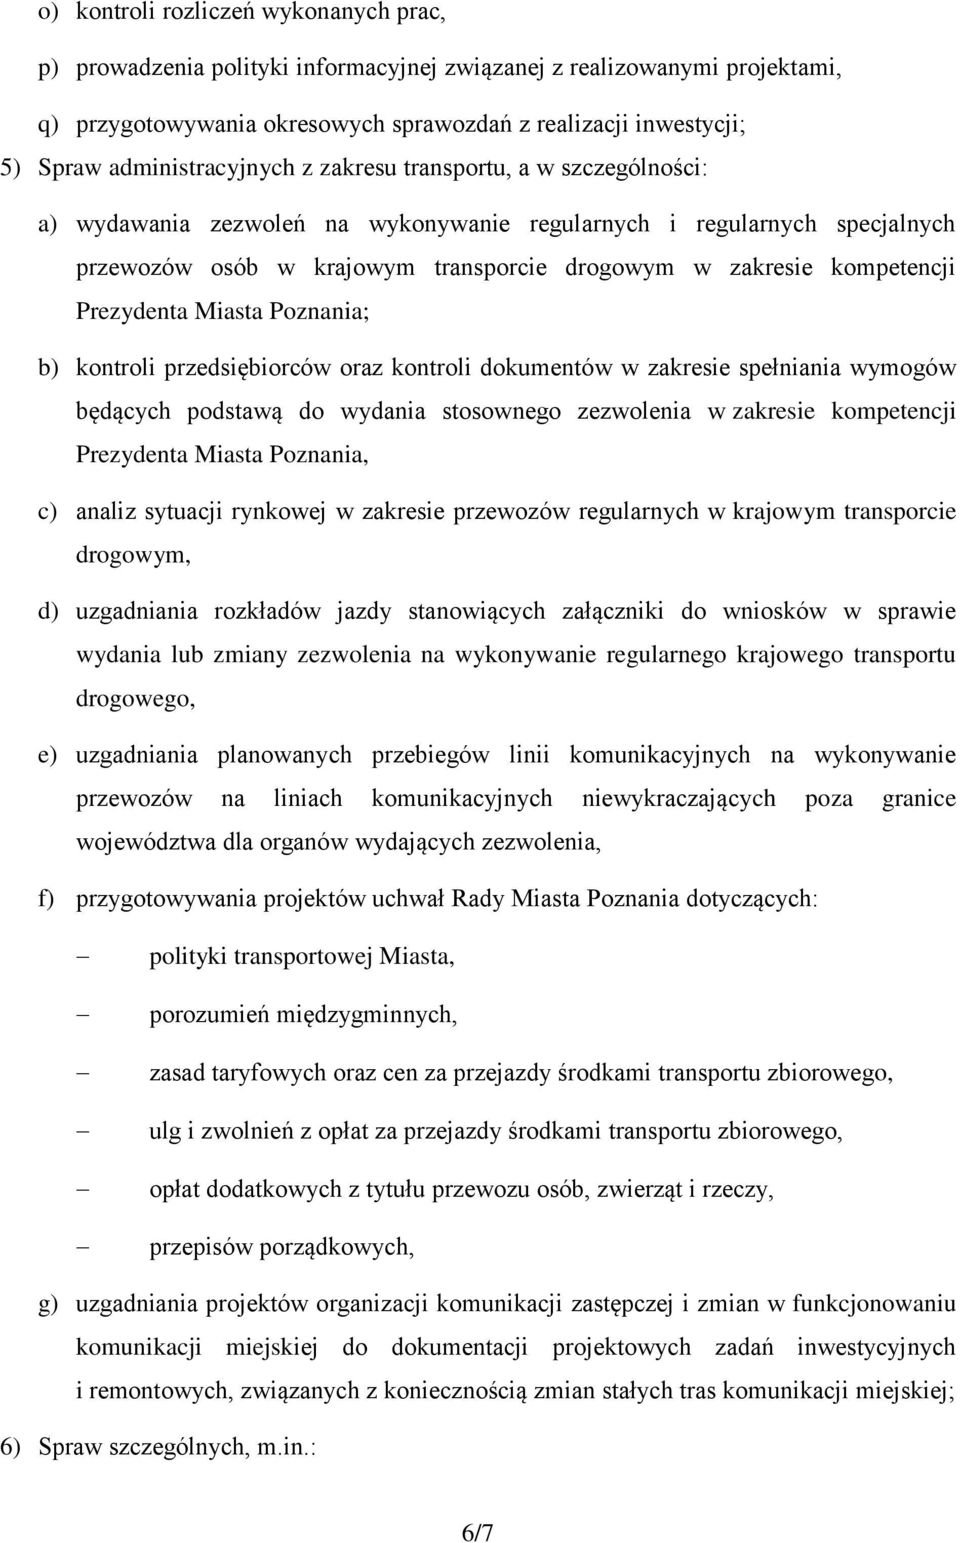 kompetencji Prezydenta Miasta Poznania; b) kontroli przedsiębiorców oraz kontroli dokumentów w zakresie spełniania wymogów będących podstawą do wydania stosownego zezwolenia w zakresie kompetencji